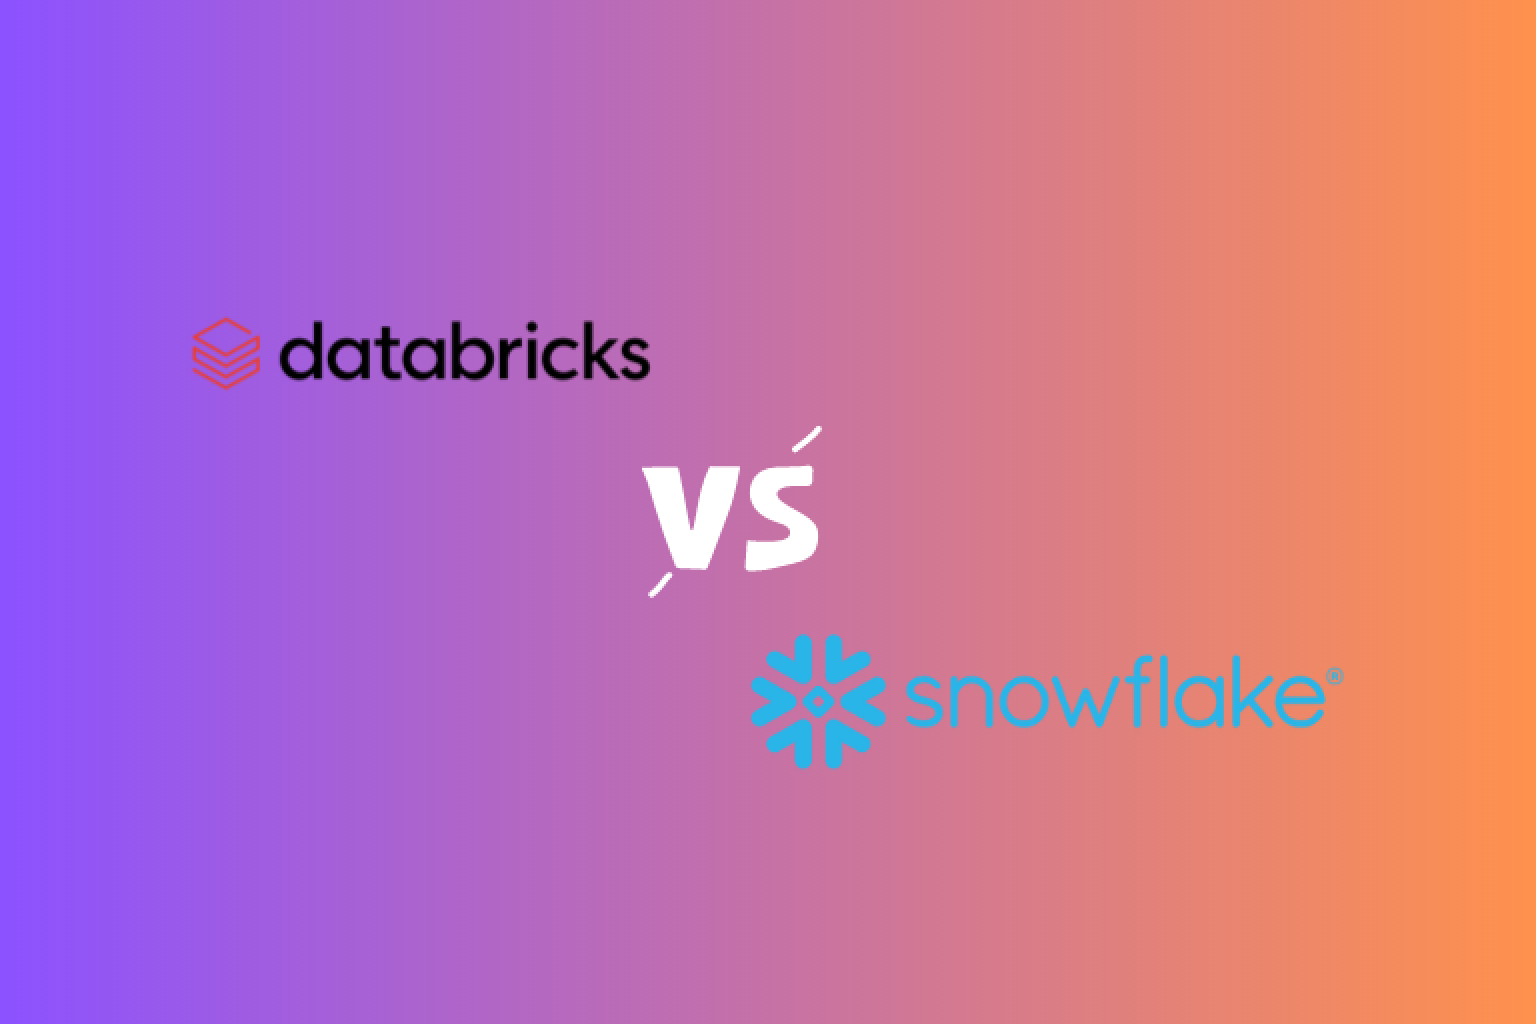 Descubre las principales diferencias entre Databricks y Snowflake, dos plataformas líderes de datos. Aprende sobre sus ventajas, desventajas y descubre cuál es la correcta para tus necesidades.